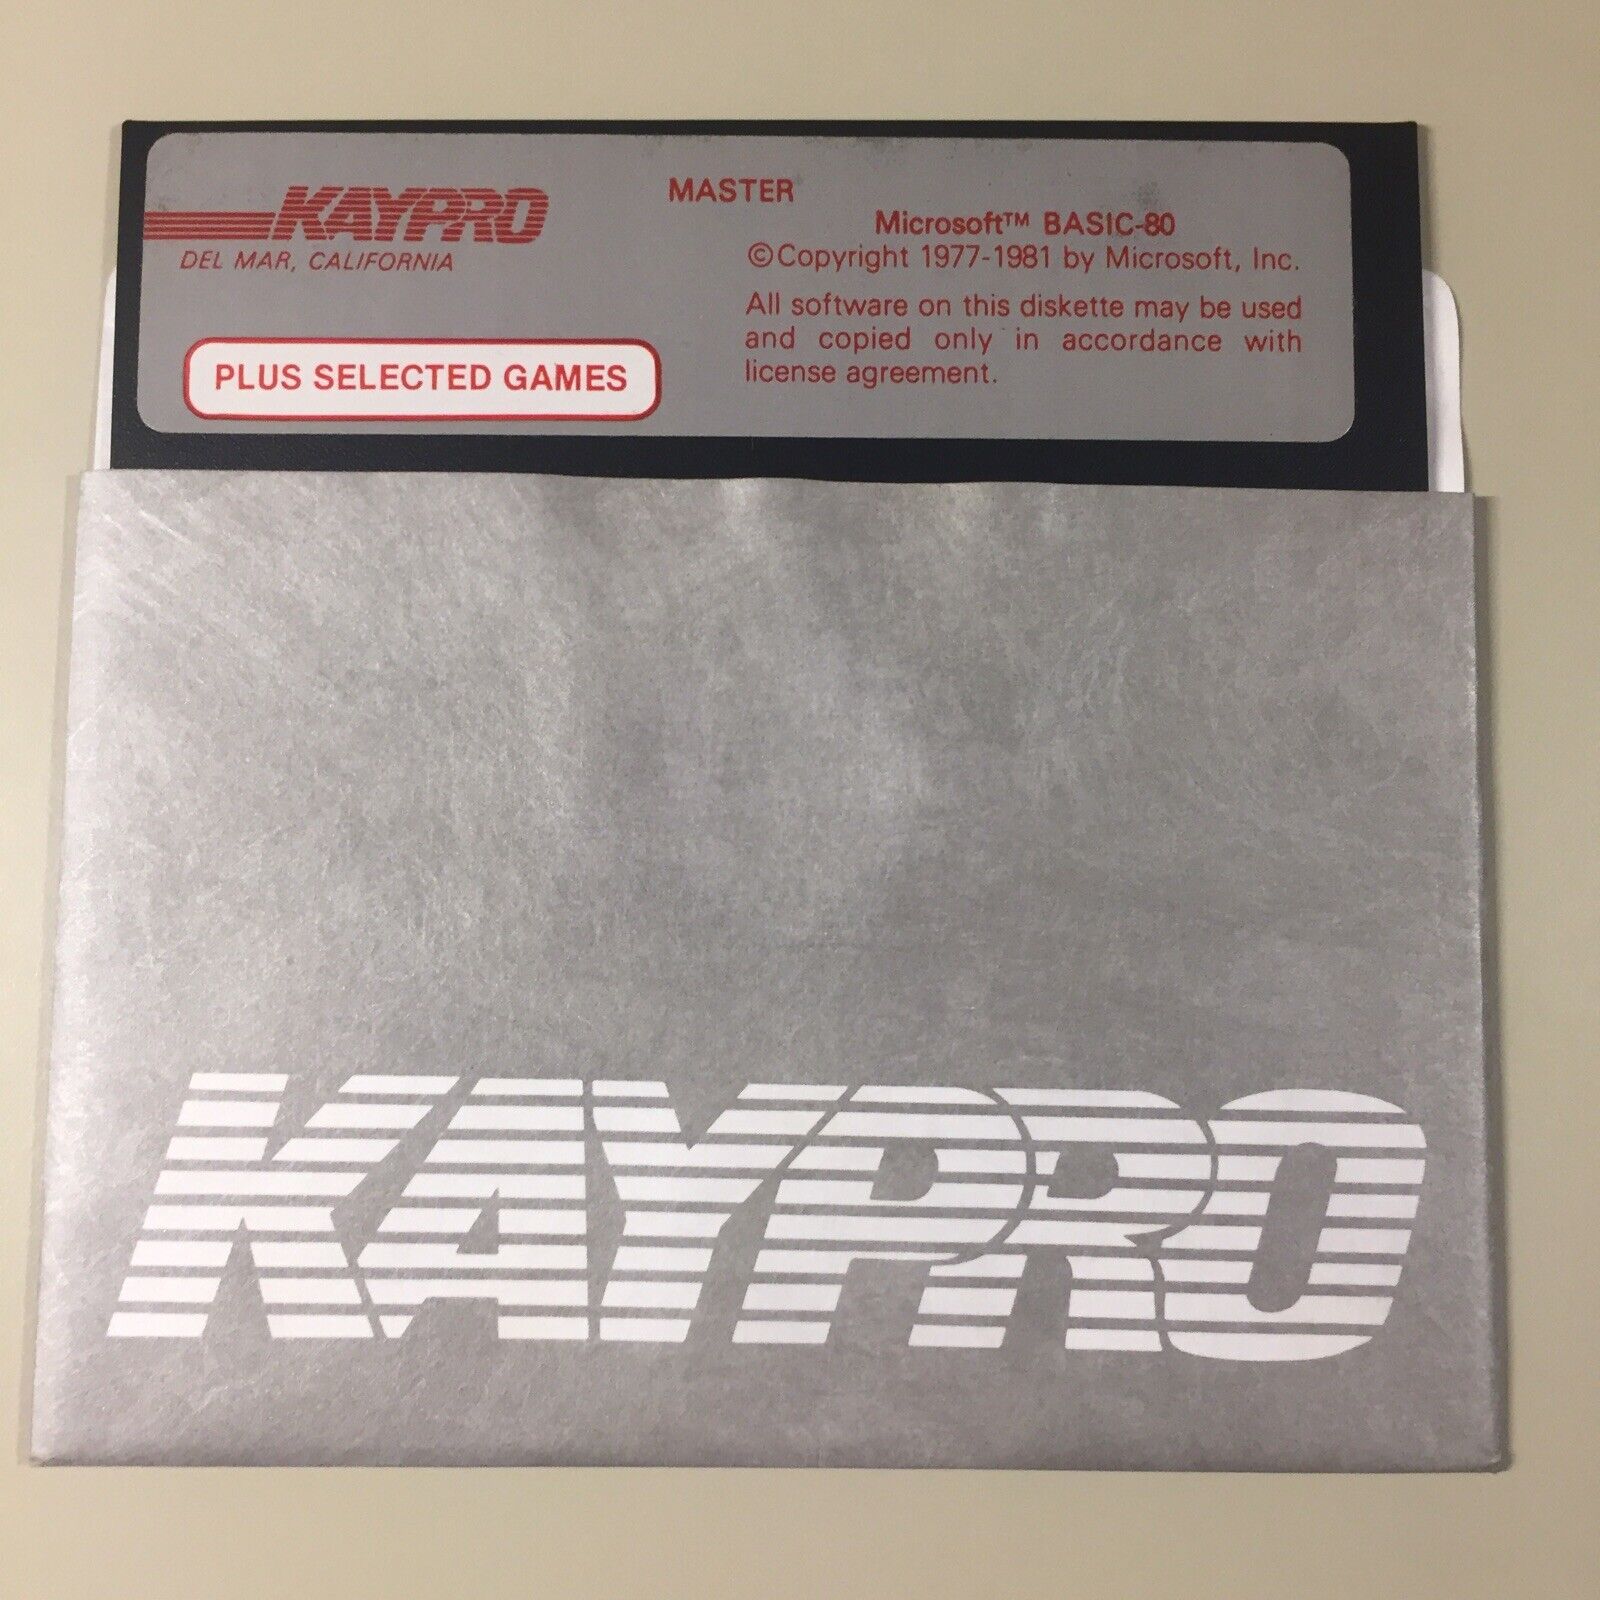 Vintage 1981 KAYPRO Microsoft Basic -80 Software 5.25” Floppy Disk VHTF